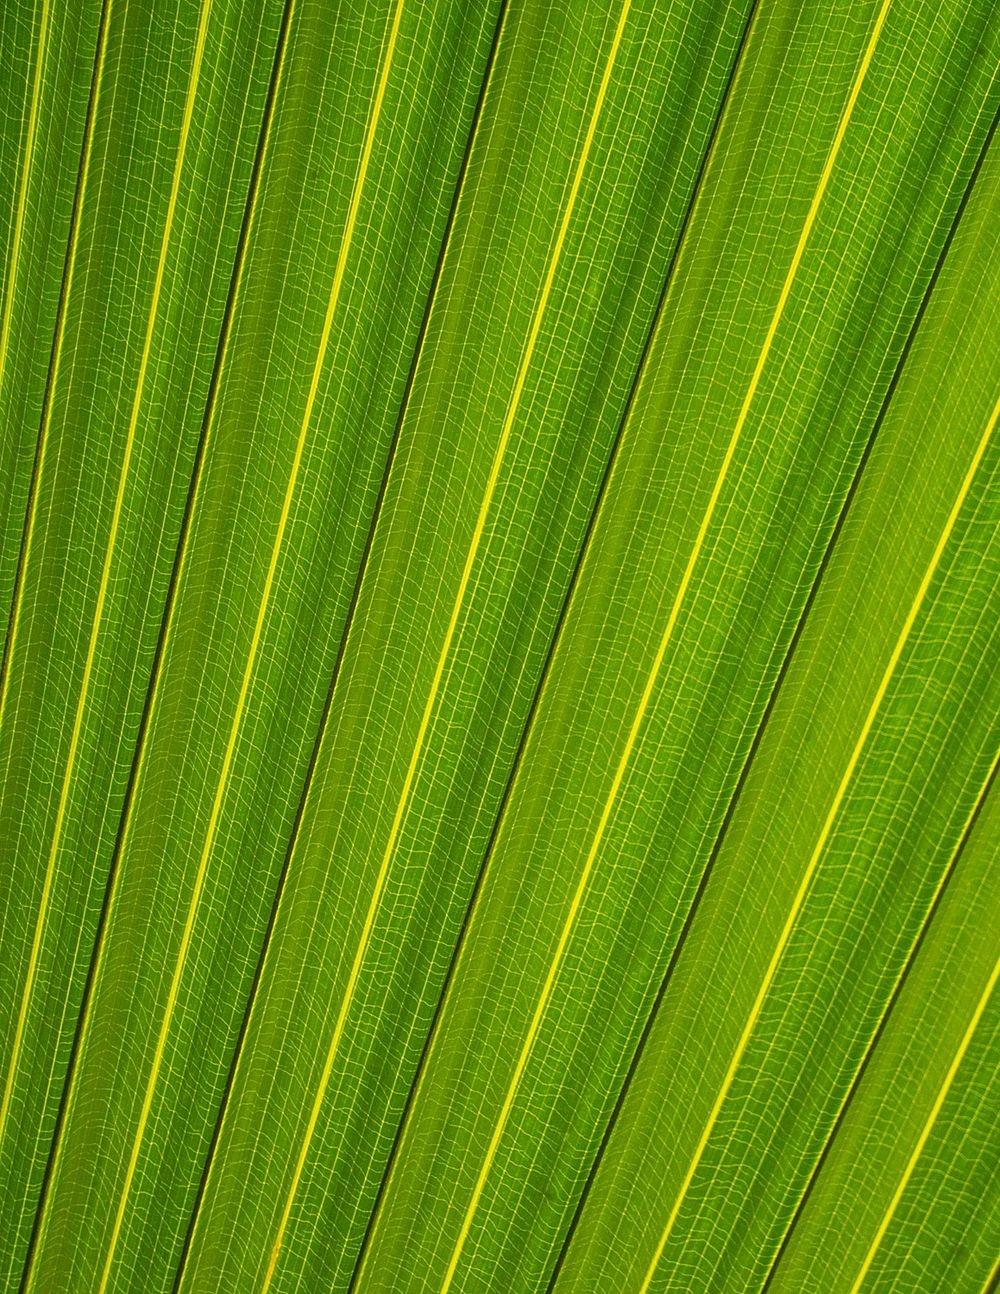 Palm leaf background, close up botanical design